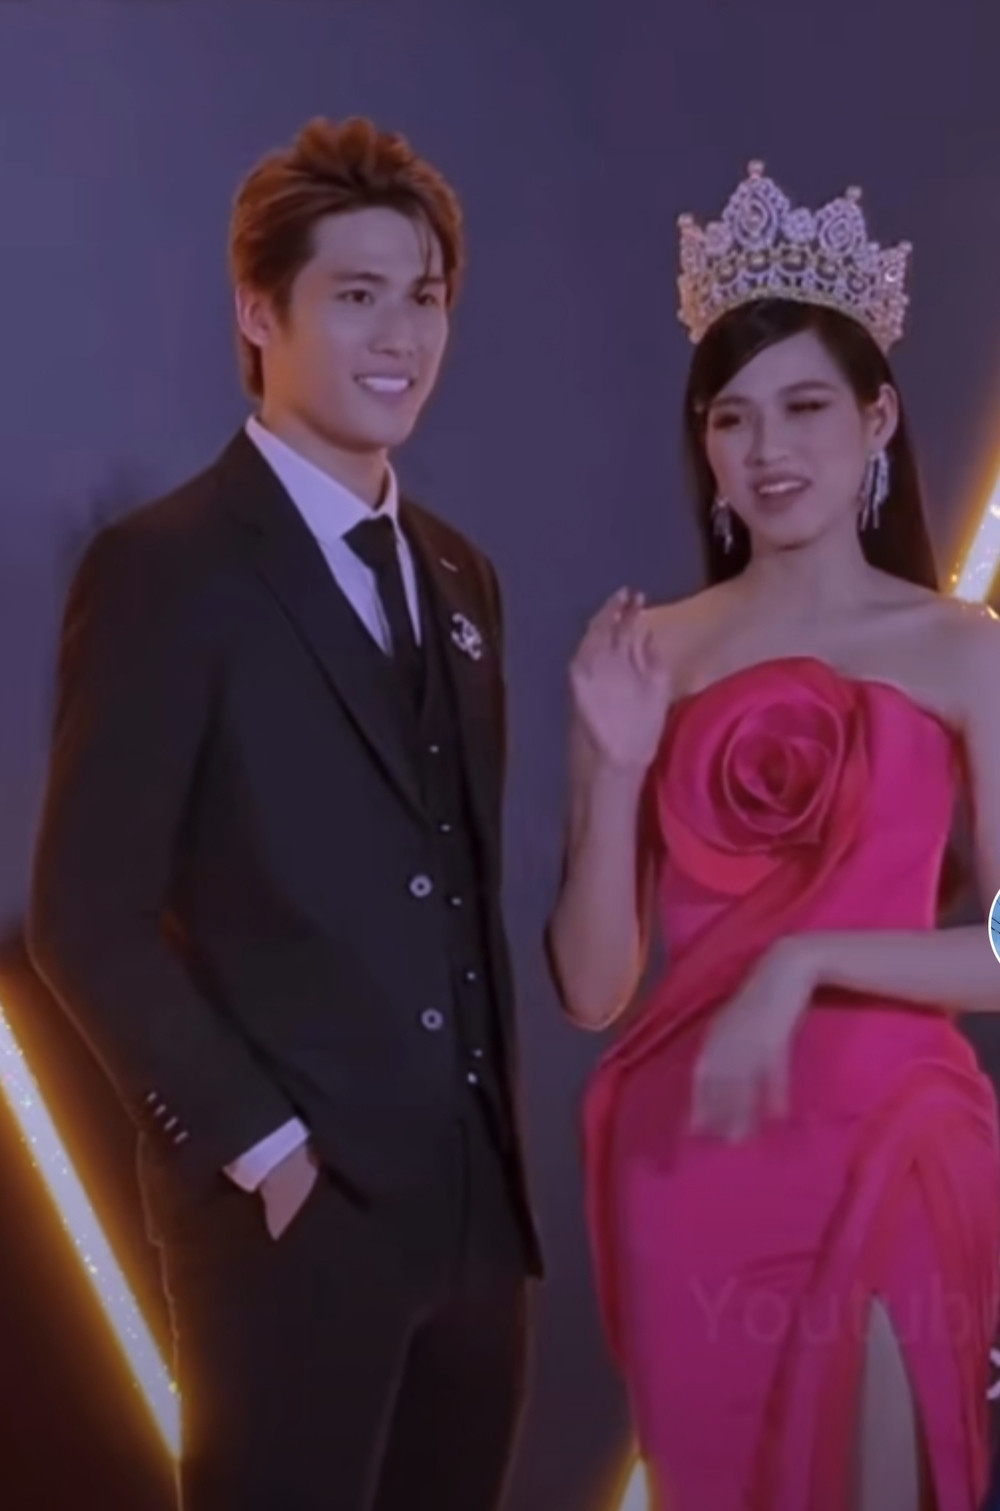 Mới đây, trên mạng xã hội đang lan truyền đoạn clip ghi lại khoảnh khắc Hoa hậu Việt Nam 2020 - Đỗ Thị Hà thẳng thừng từ chối cái ôm lịch sự của một đồng nghiệp nam khi cùng nhau chụp ảnh trên thảm đỏ tại một lễ trao giải diễn ra cách đây không lâu. 
Xem thêm